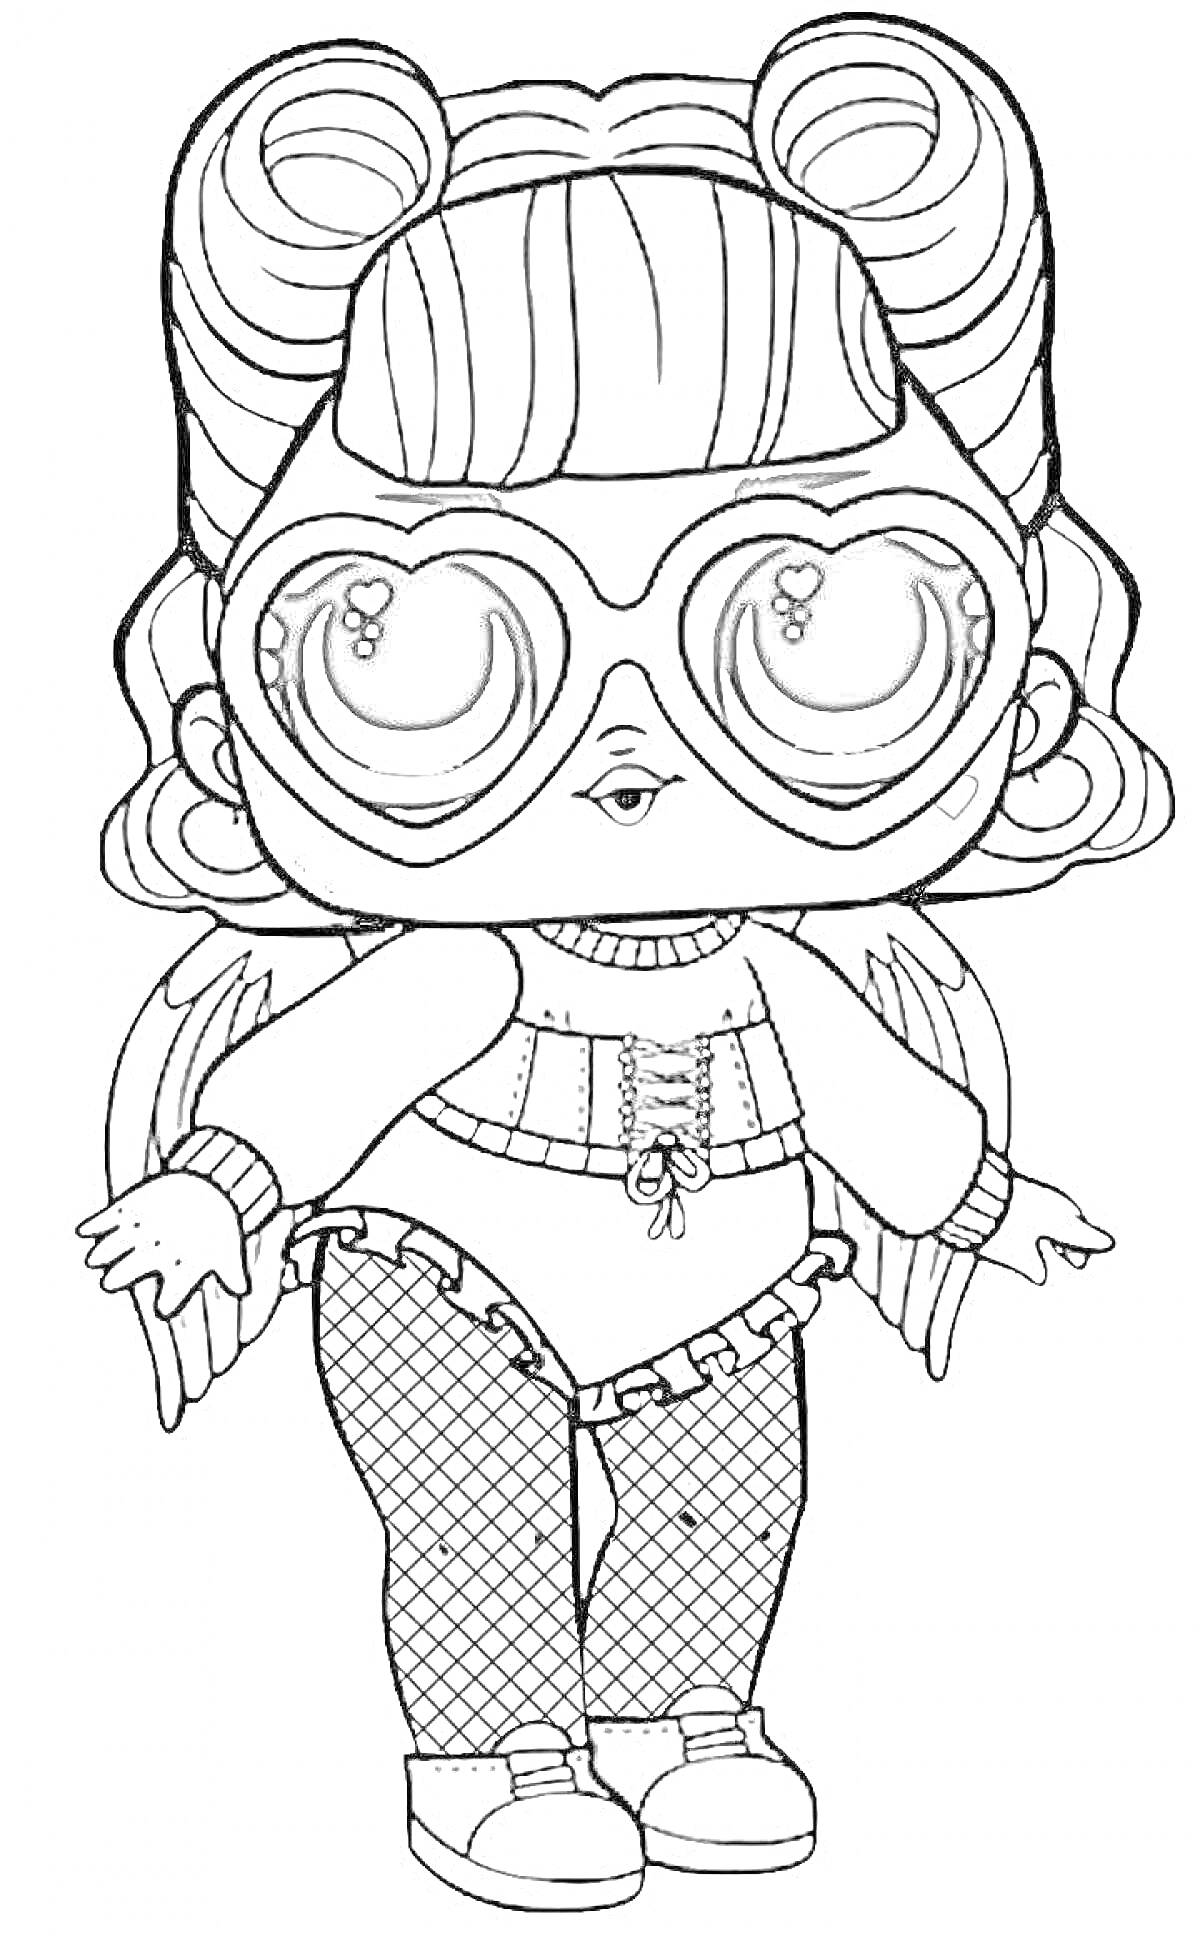 Кукла ЛОЛ с большими глазами в очках, с крыльями и в костюме с шортами и колготками